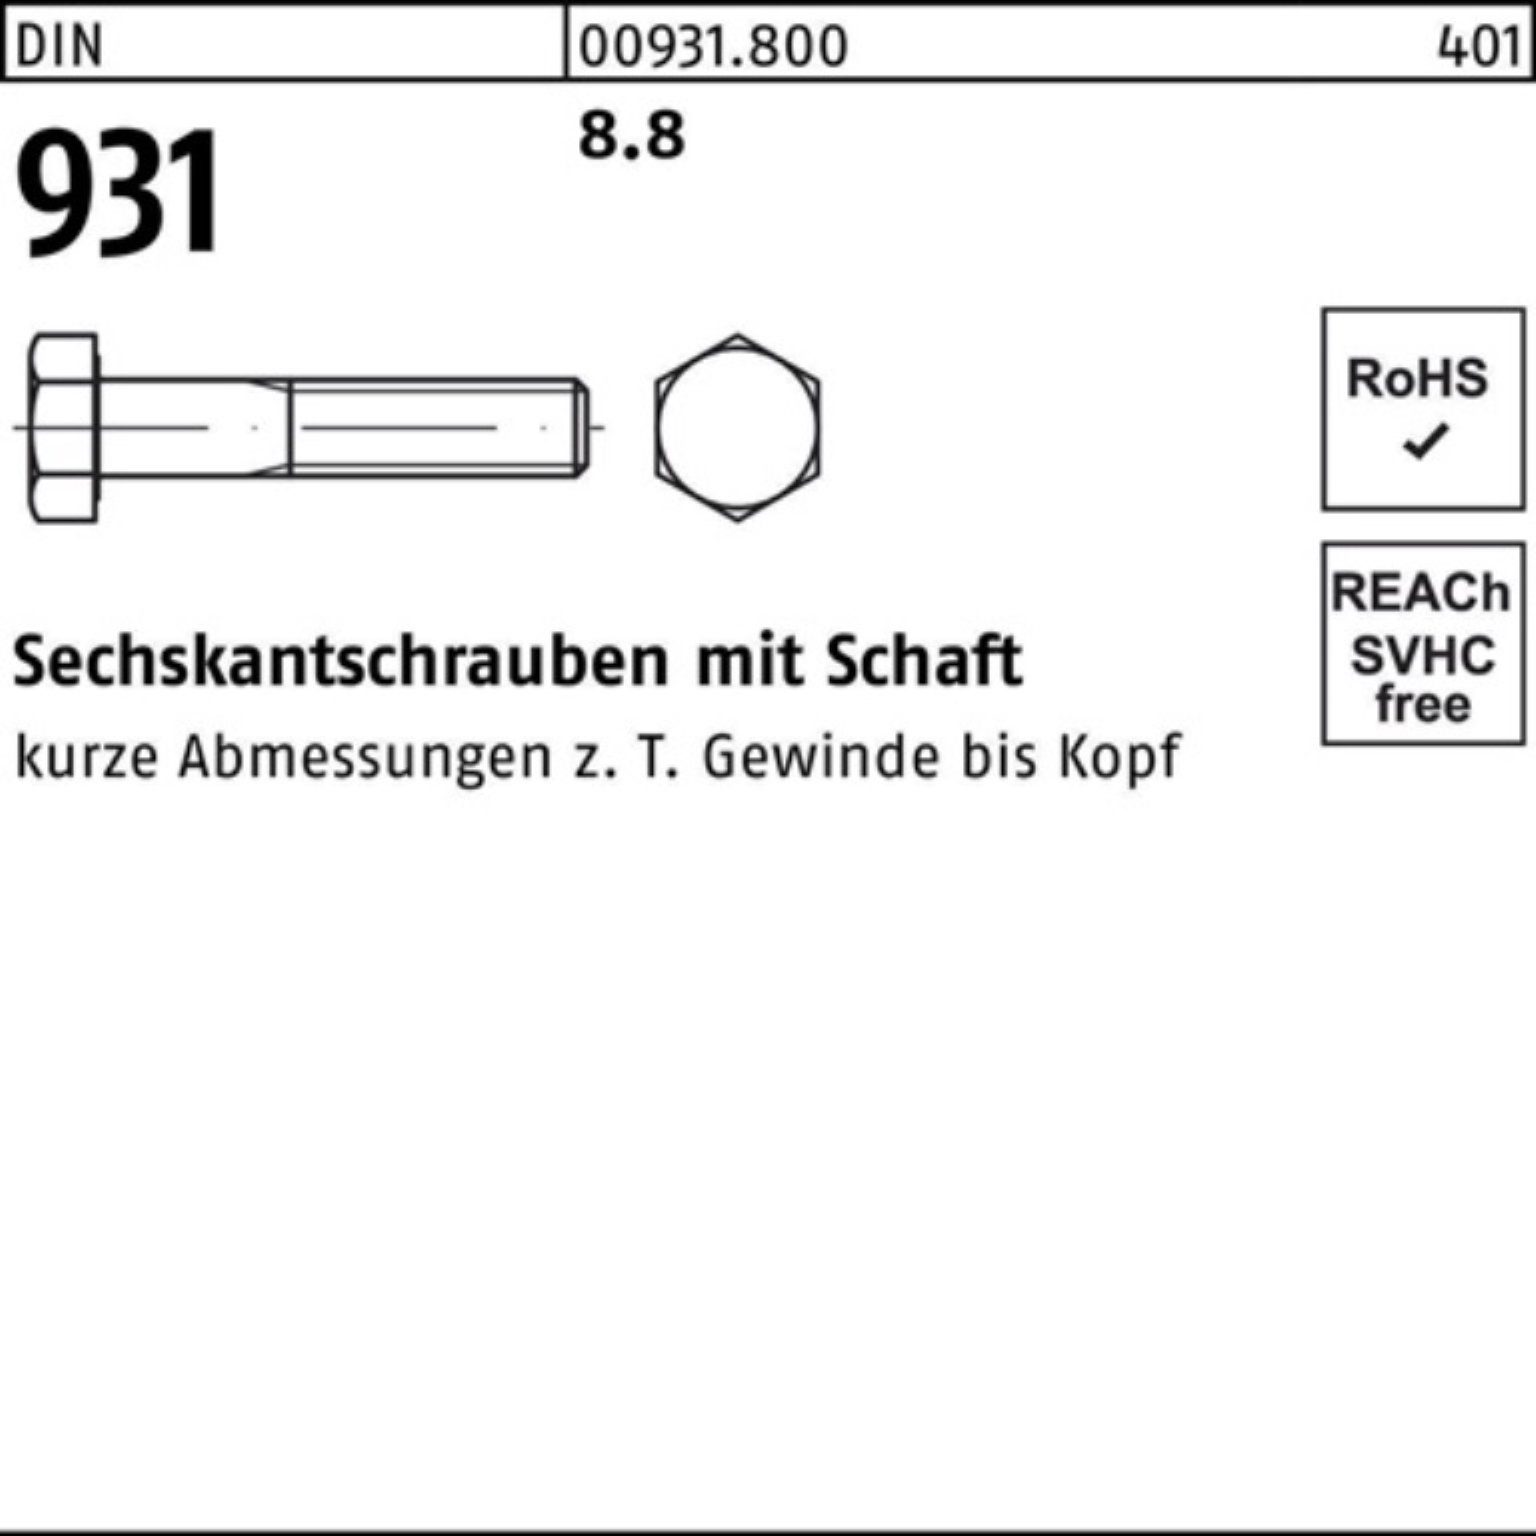 M4x Stück Schaft 500er DIN Pack Sechskantschraube 45 DIN 931 Reyher 500 8.8 Sechskantschraube